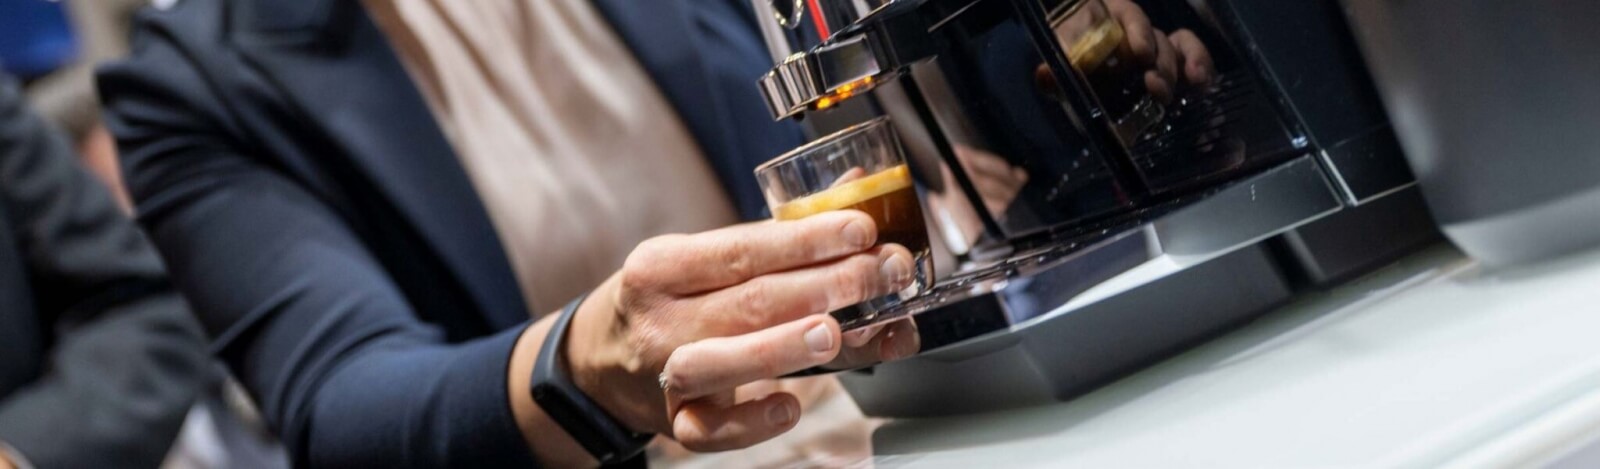 Začína sa výberová káva poddávať plnoautomatickým espresso strojom?